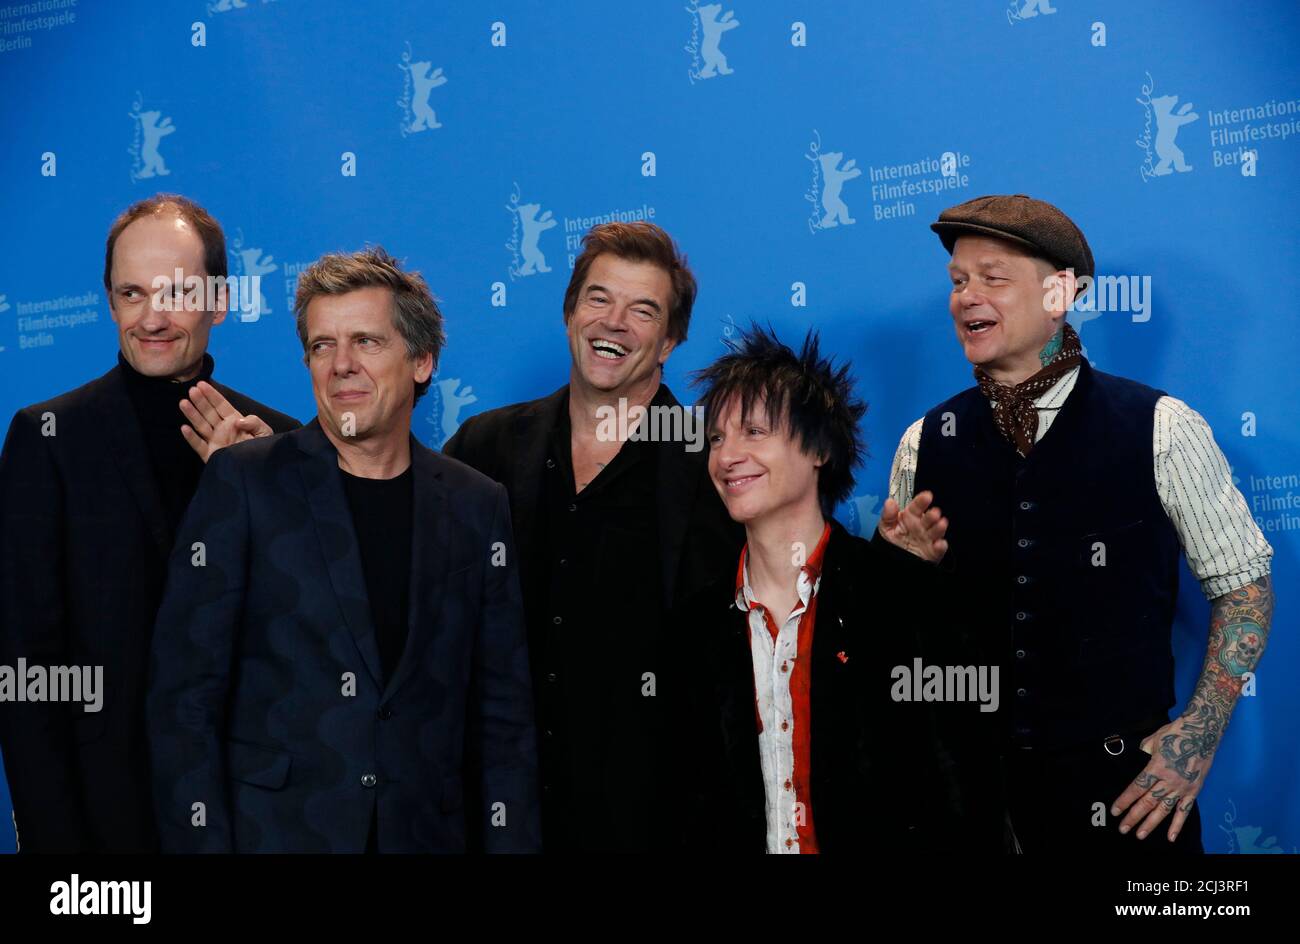 Members of the band Die Toten Hosen, Vom, Kuddel, Breiti, Campino und Andi  pose during a photocall to promote the movie "Weil du nur einmal lebst - Die  Toten Hosen auf Tour " (